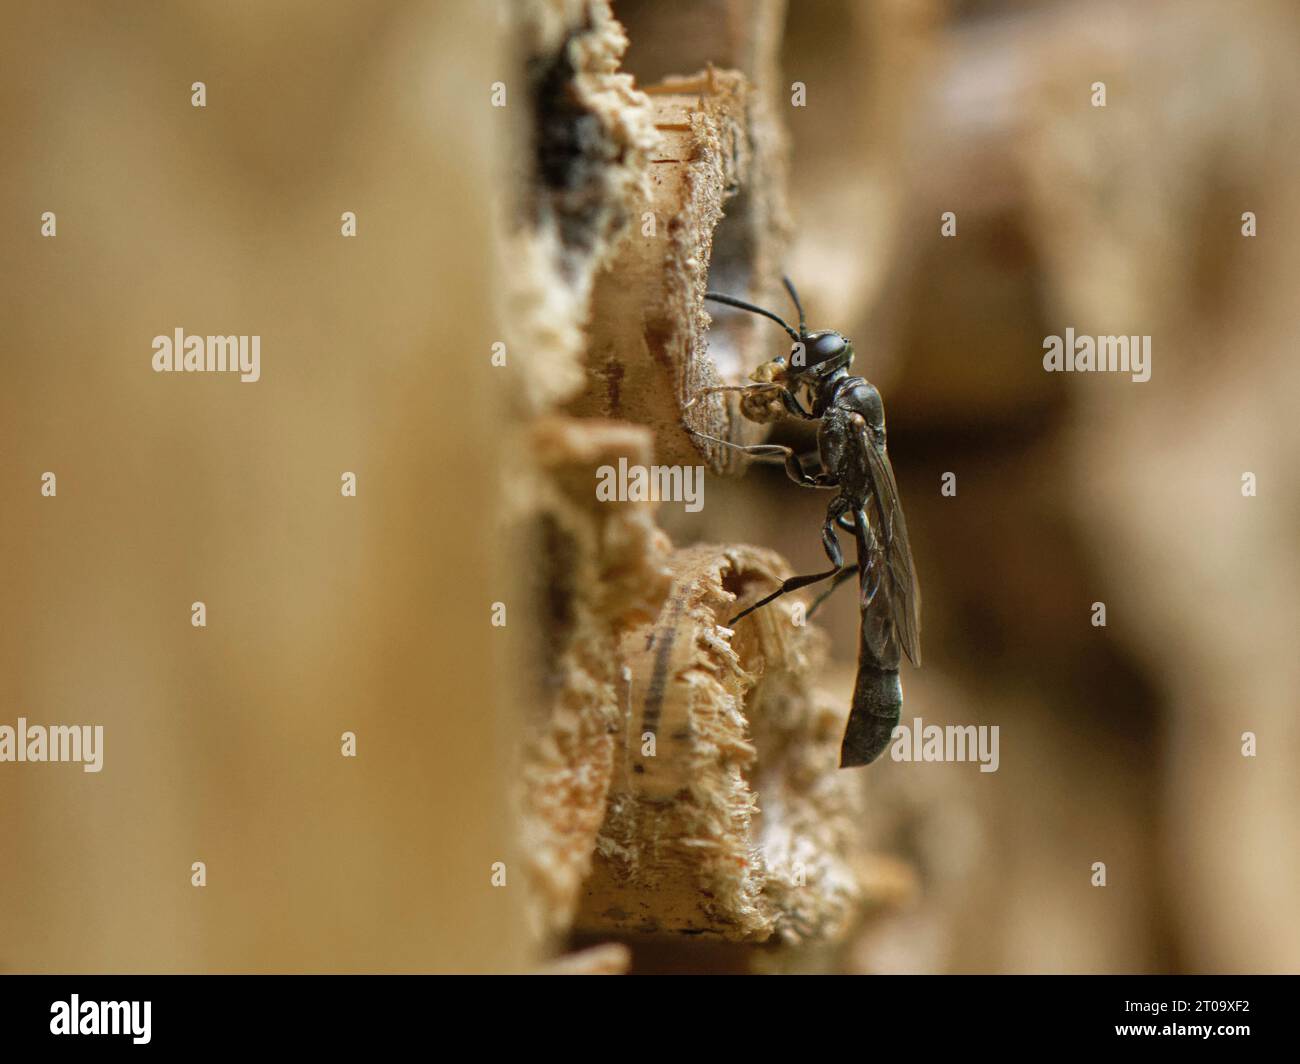 Vespa in legno con corna di legno (Trypoxylon clavicerum) al nido in un hotel di insetti con una palla di fango tenuta nelle gambe anteriori per sigillare il nido con, UK. Foto Stock